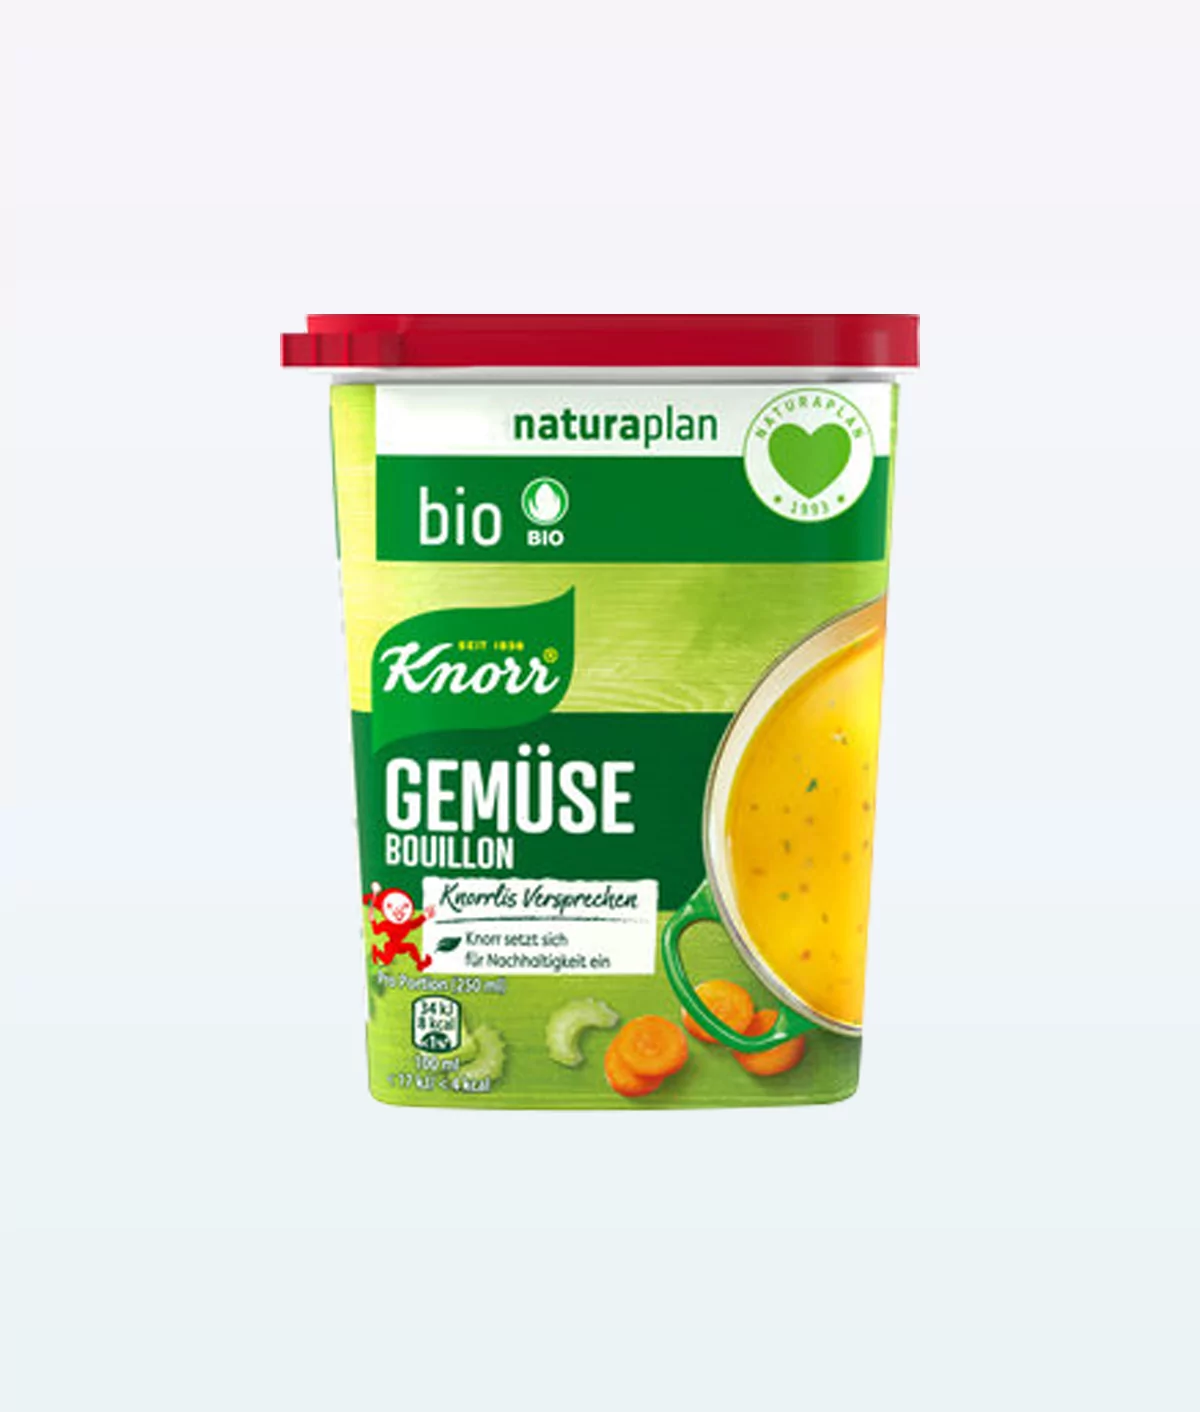 Knorr Bio Vegetable Stock